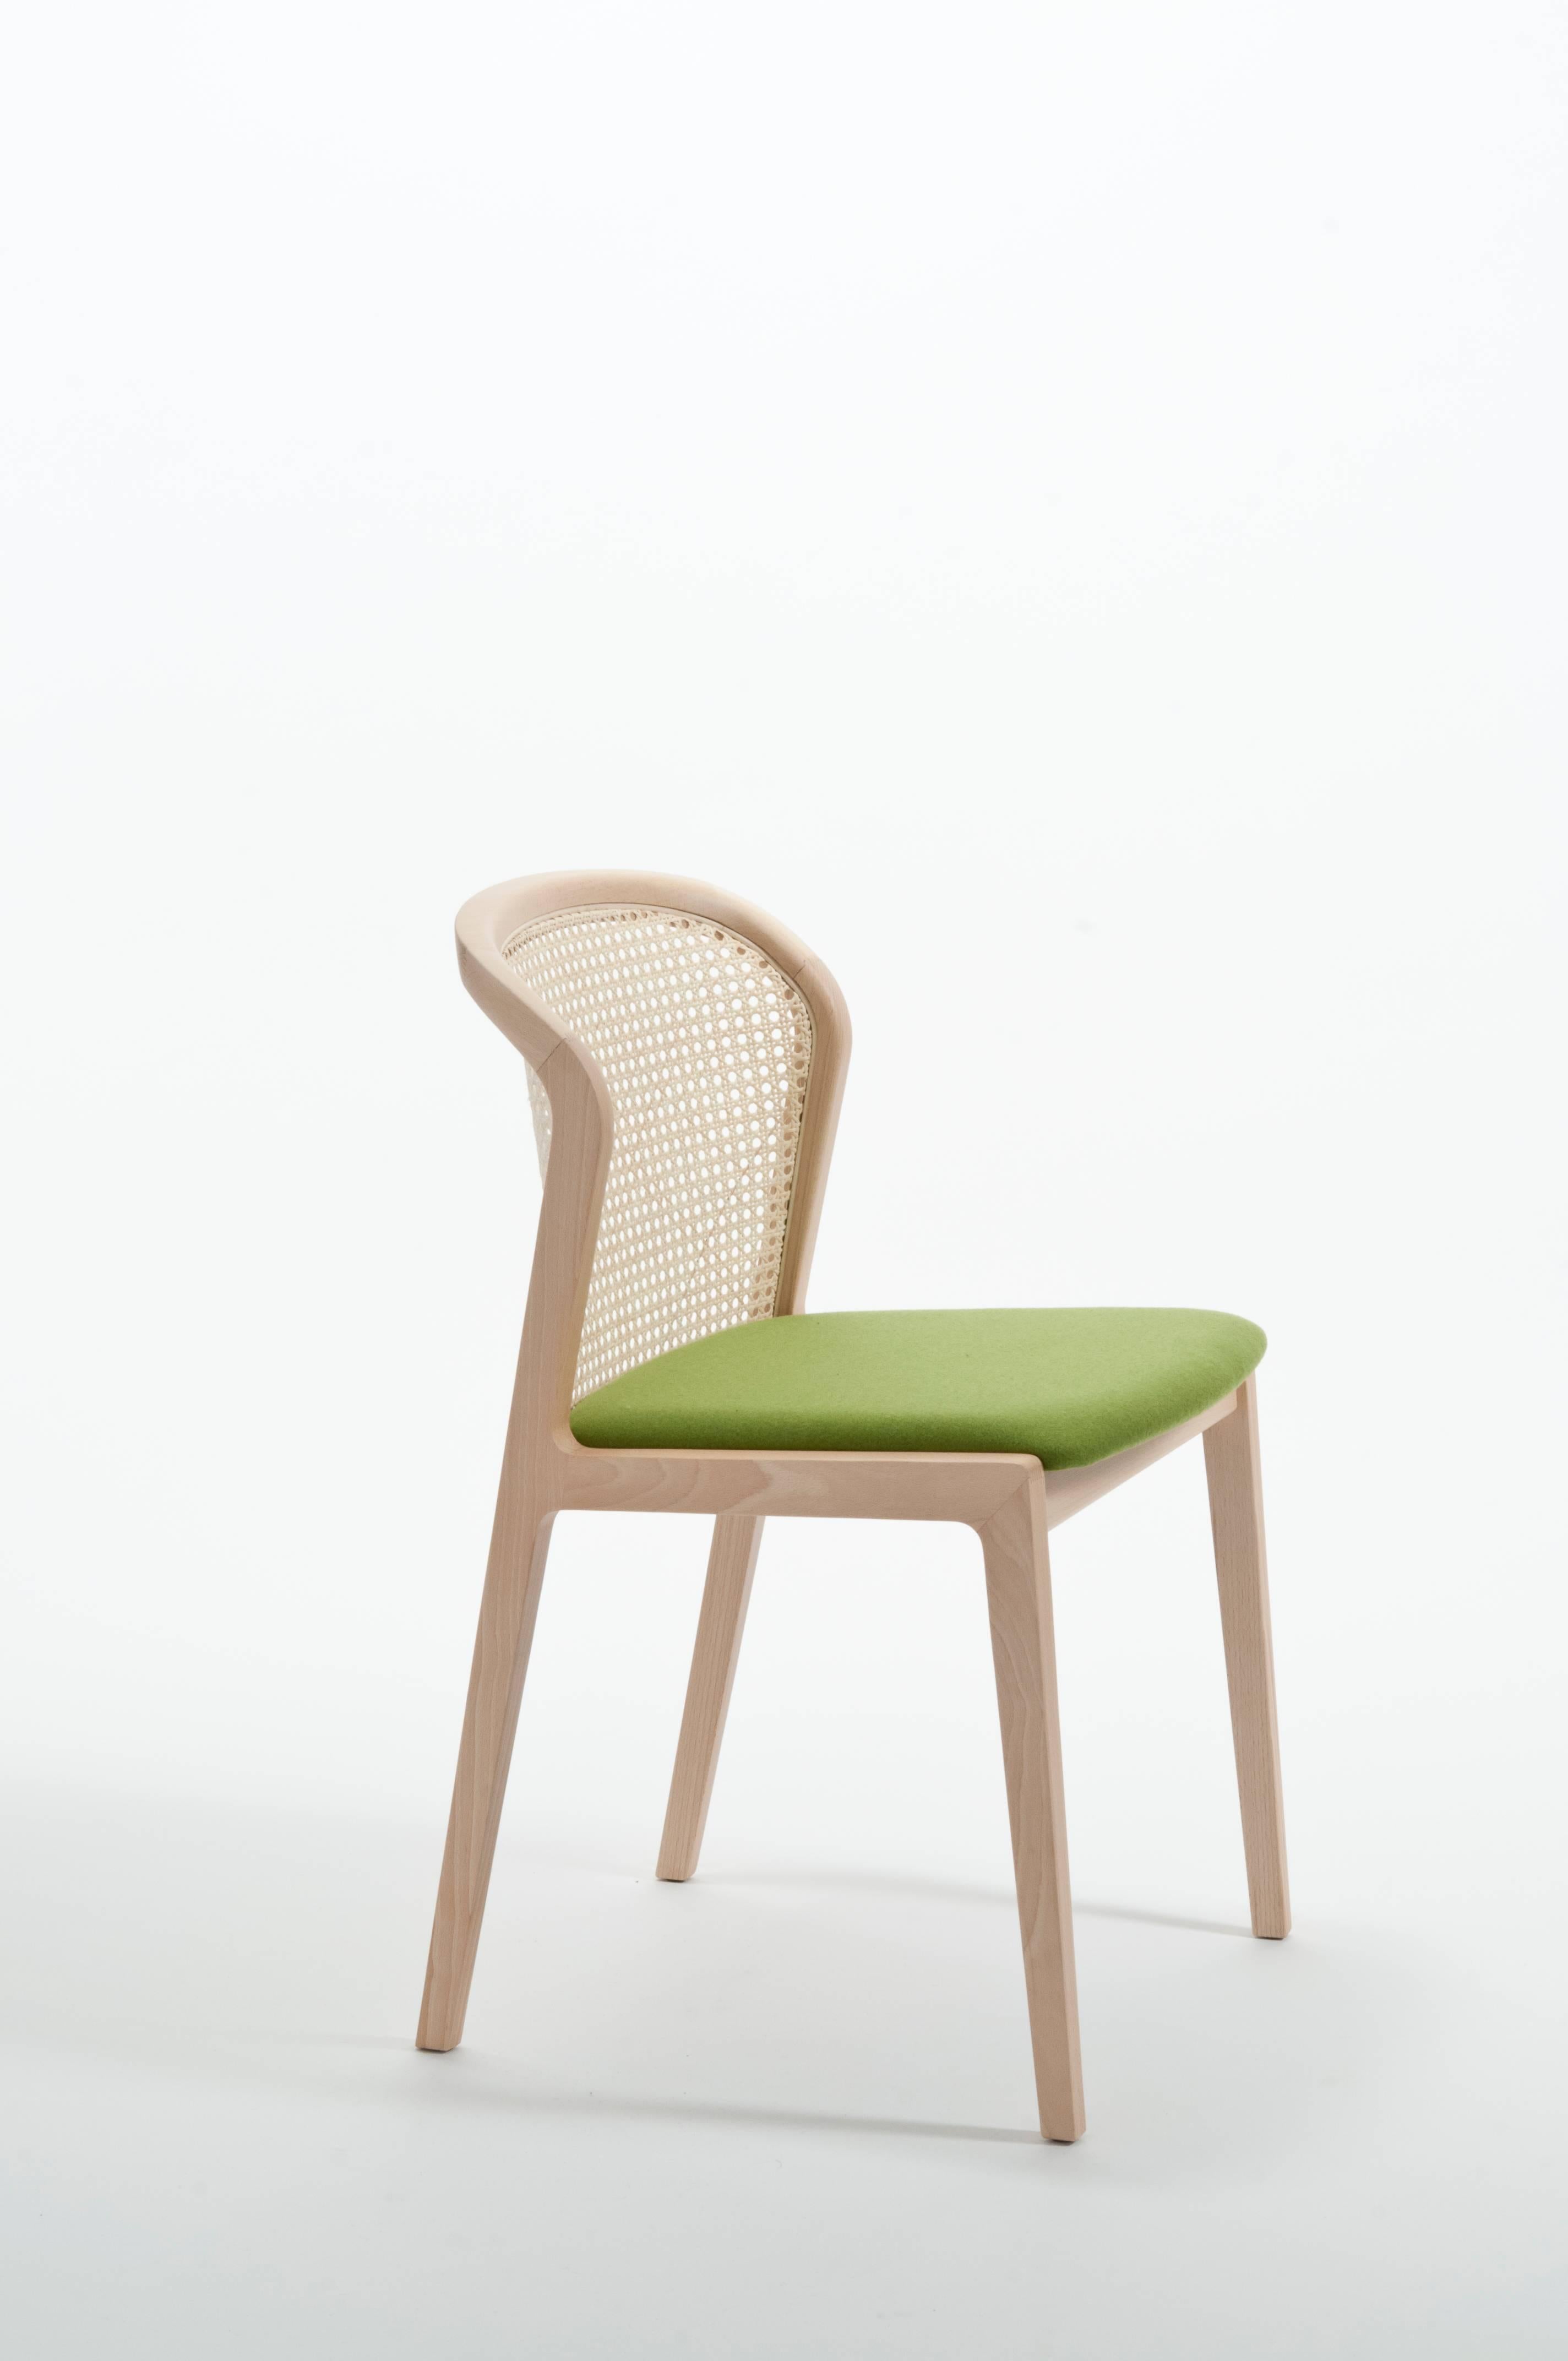 Moderne Chaise Vienna de Col, design moderne en bois et paille, assise tapissée azurée en vente